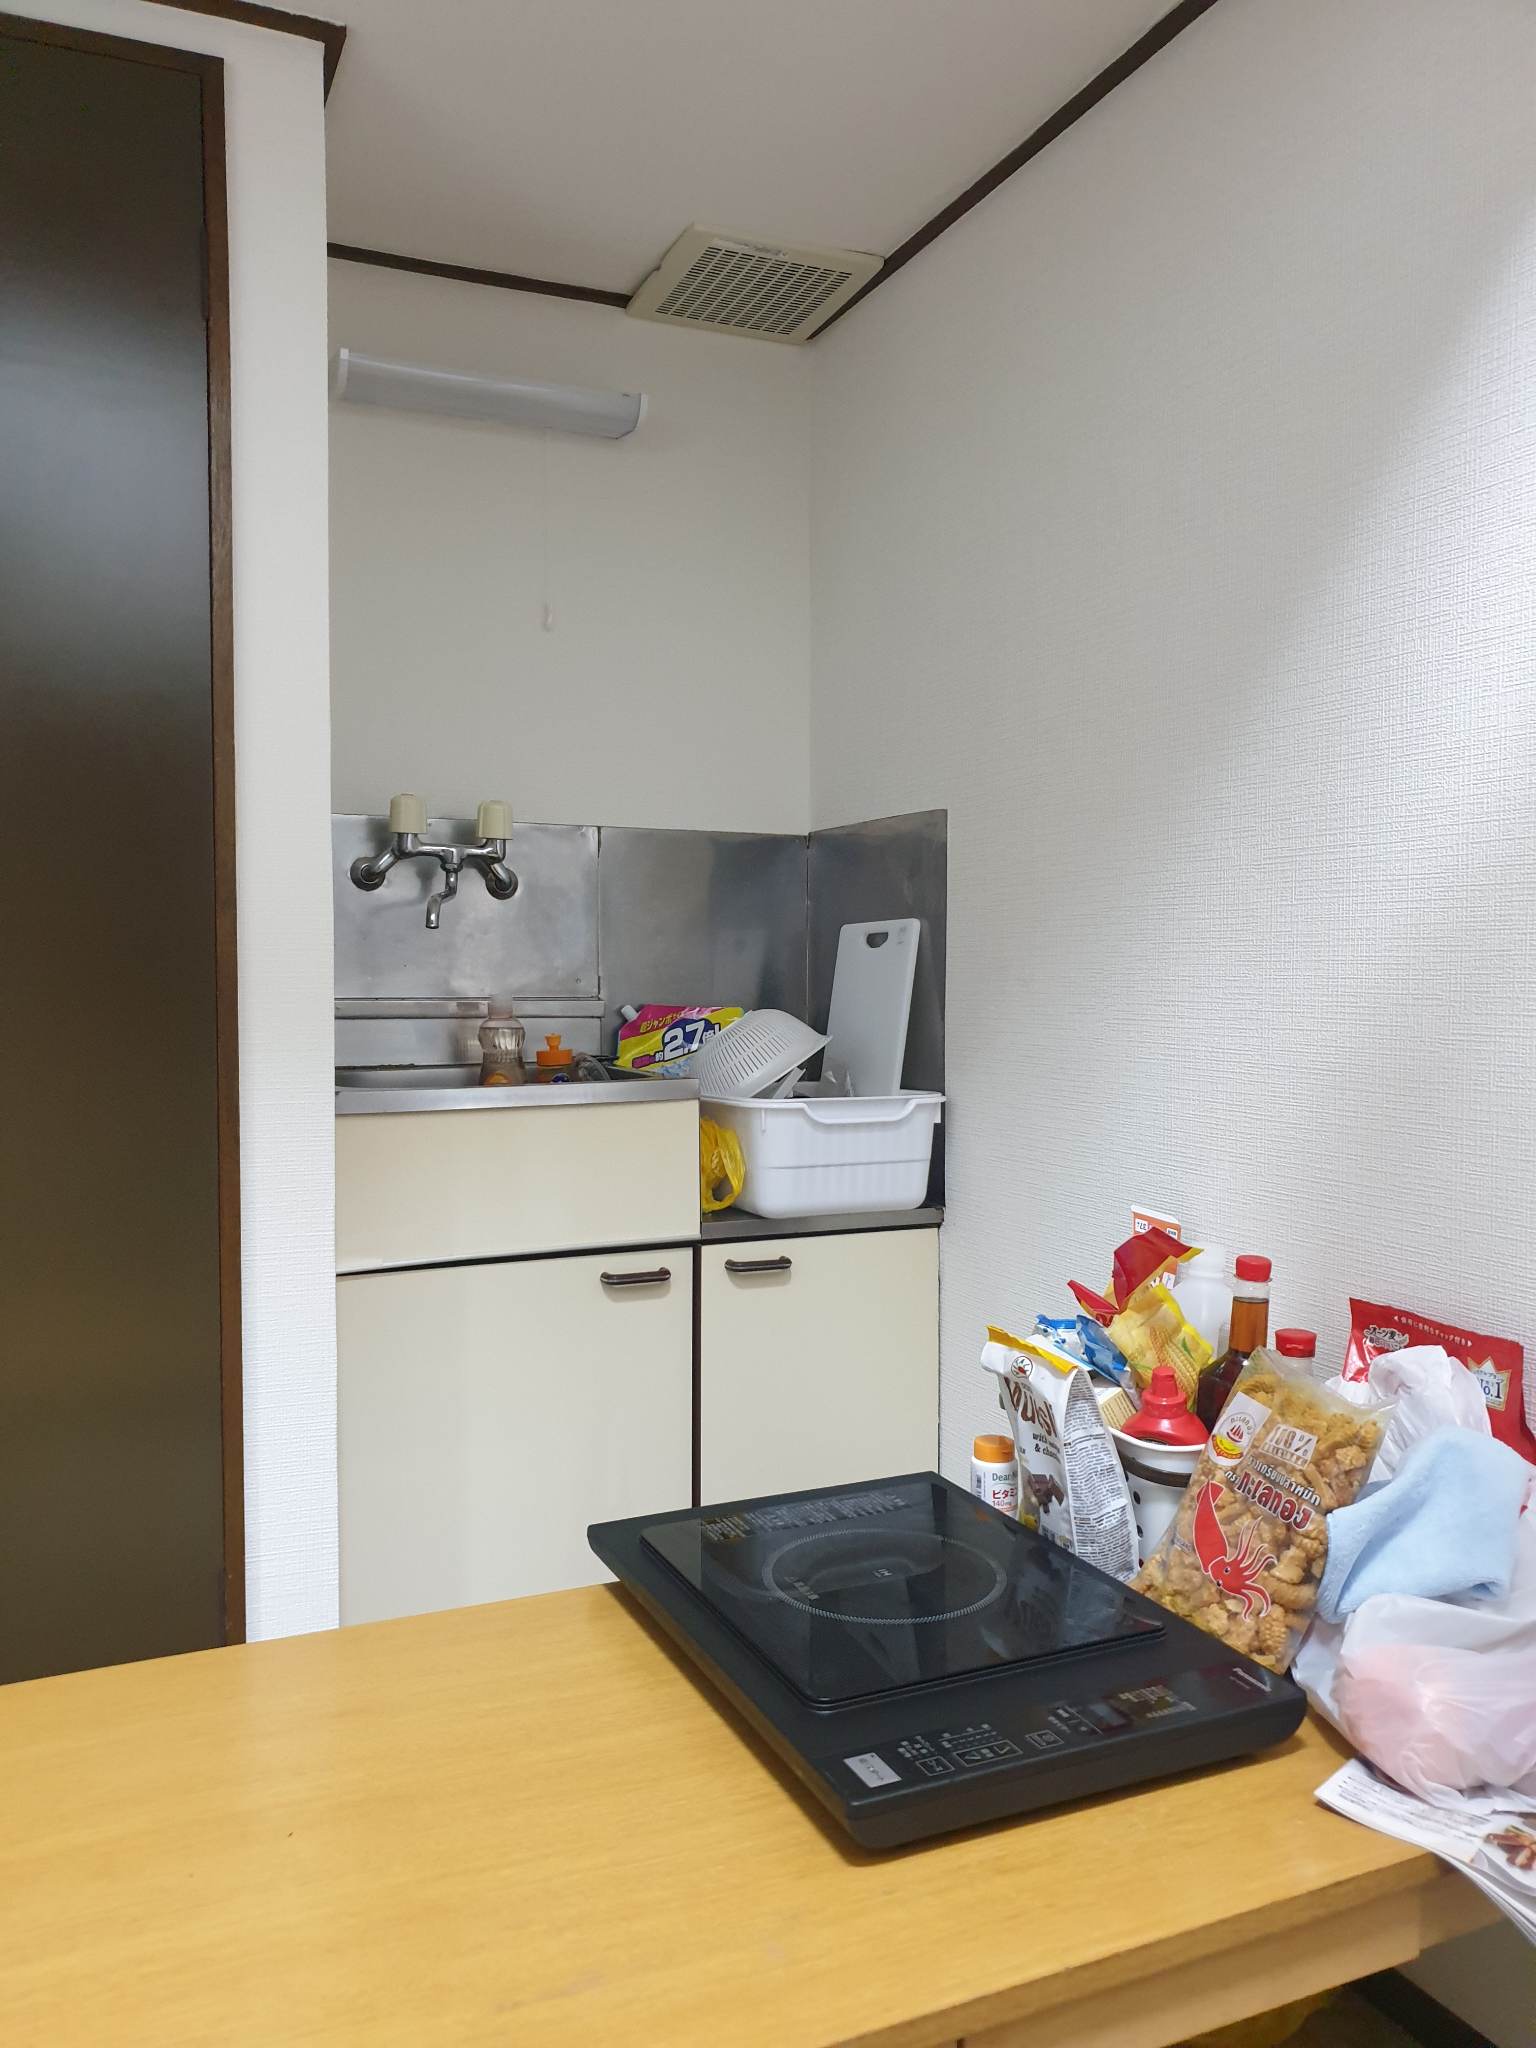 Chuyện thuê nhà của du học sinh Nhật Bản: choáng váng với tiền đầu vào cao ngất ngưởng - Ảnh 2.